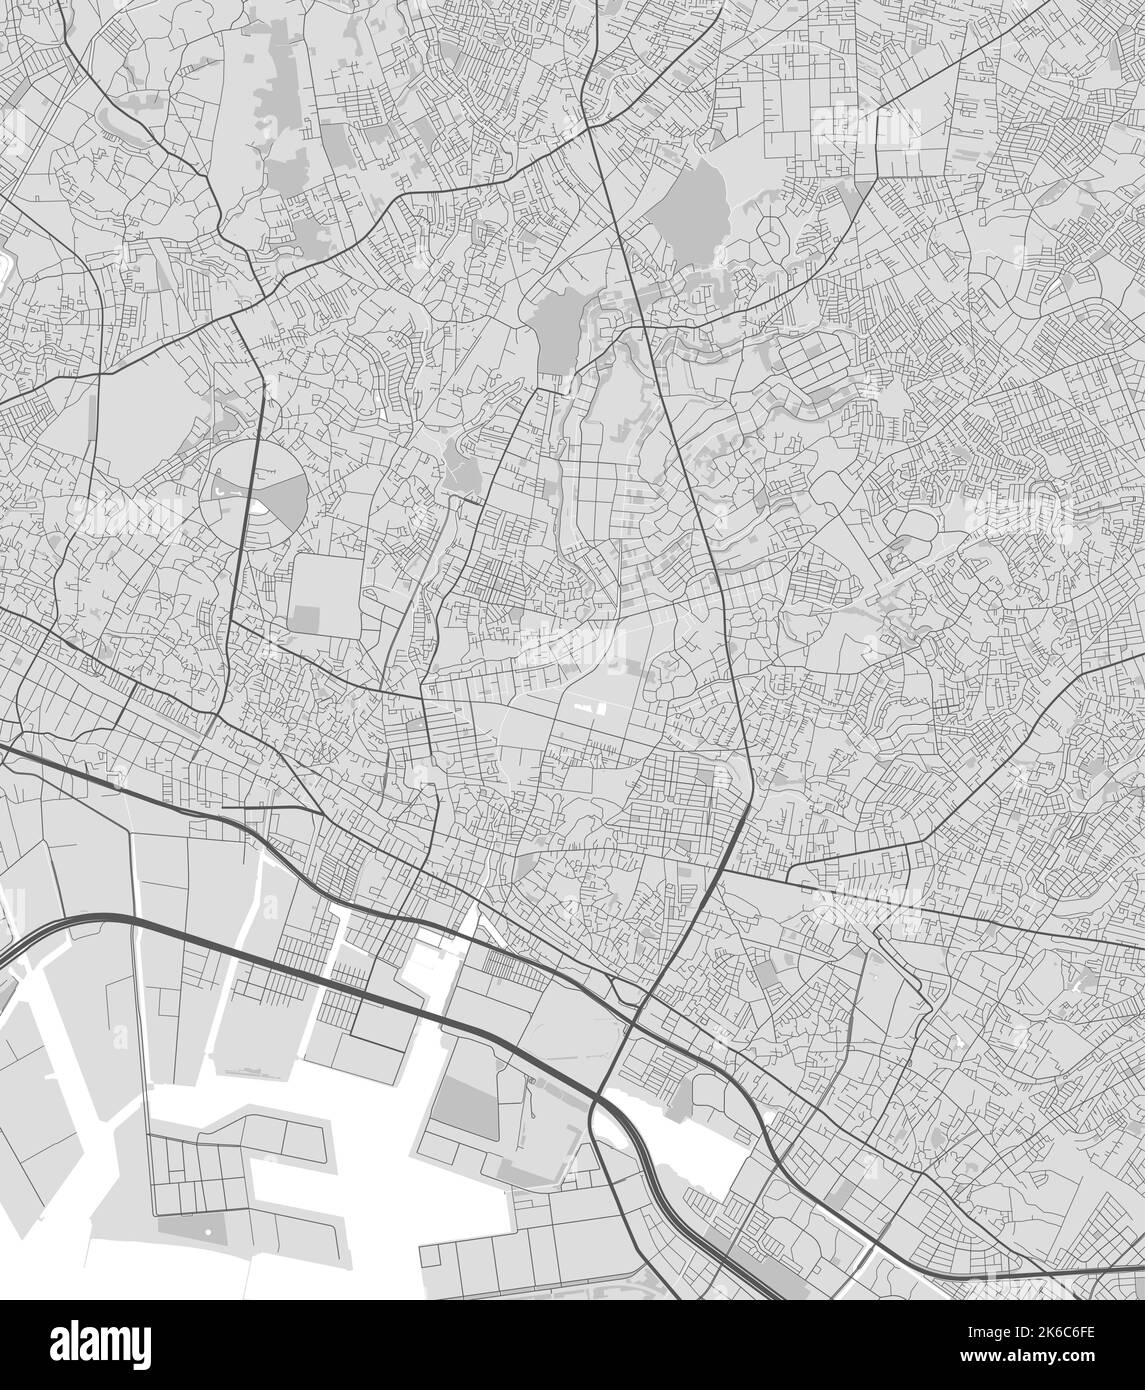 Mappa della città di Funabashi. Poster in bianco e nero urbano. Immagine della mappa stradale con vista dell'area metropolitana. Illustrazione Vettoriale